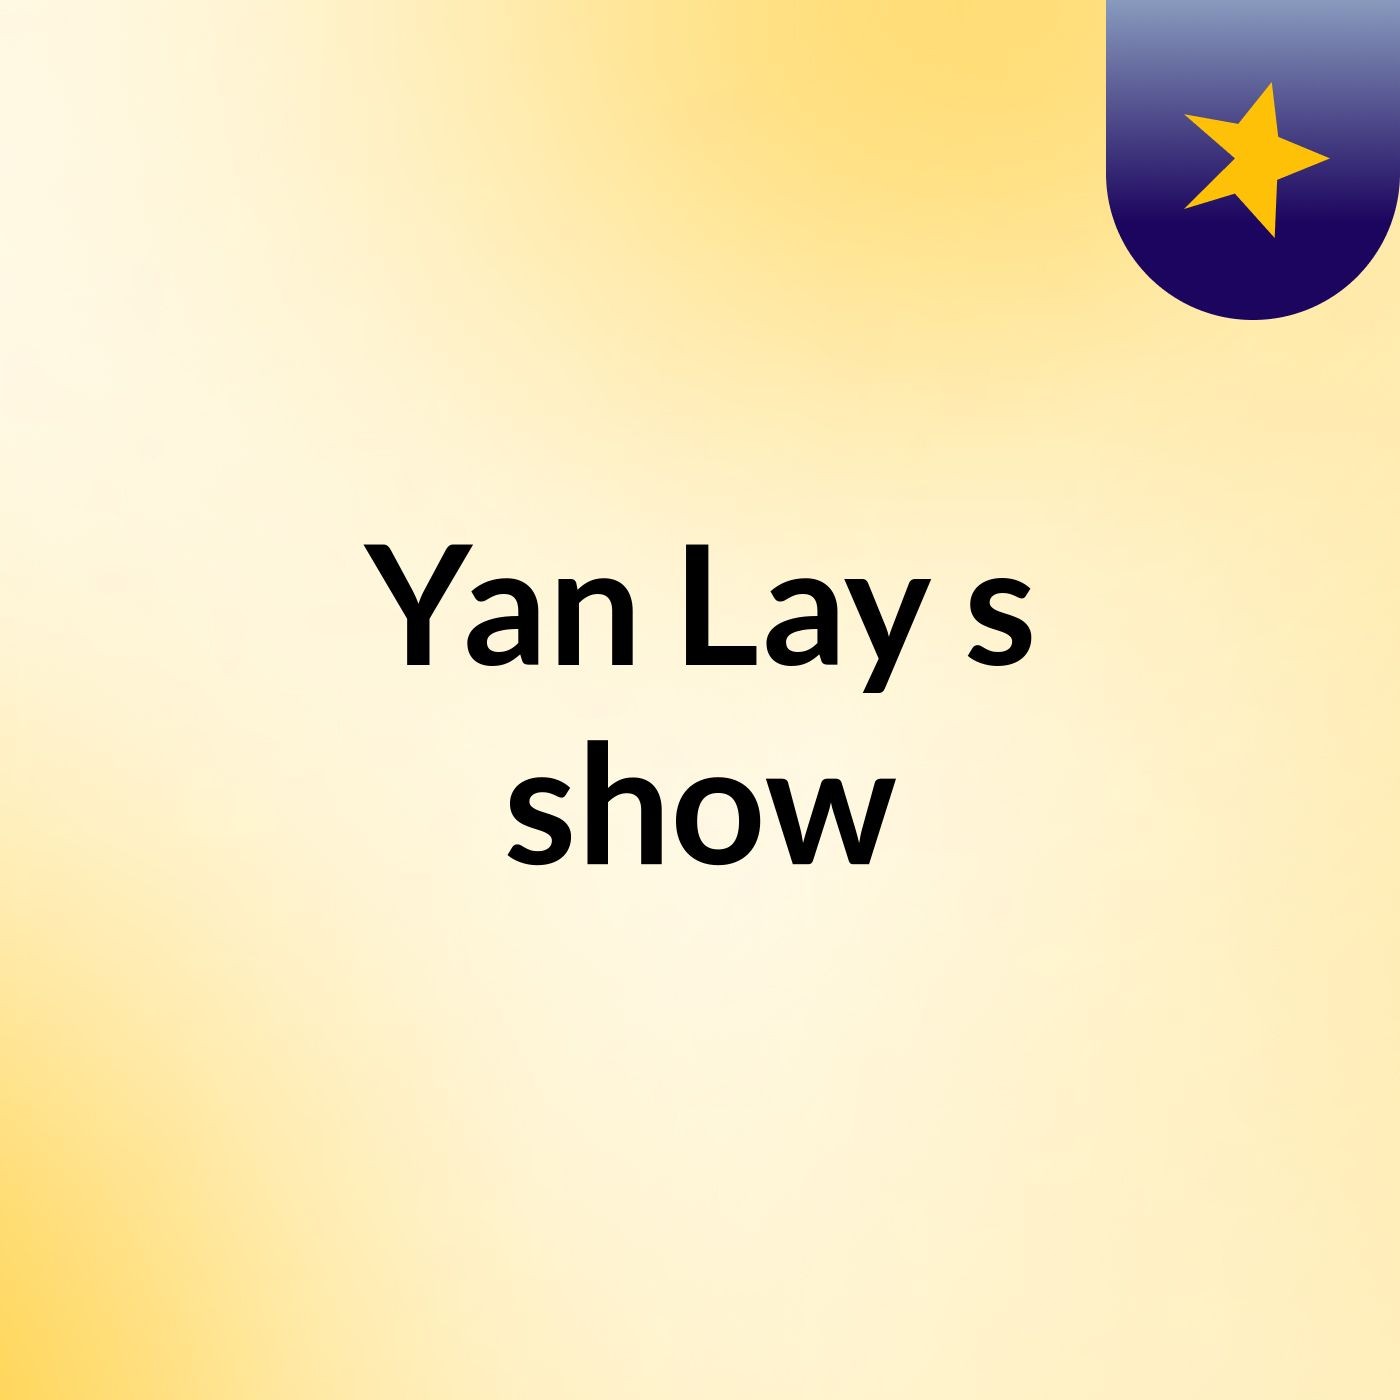 Yan Lay's show